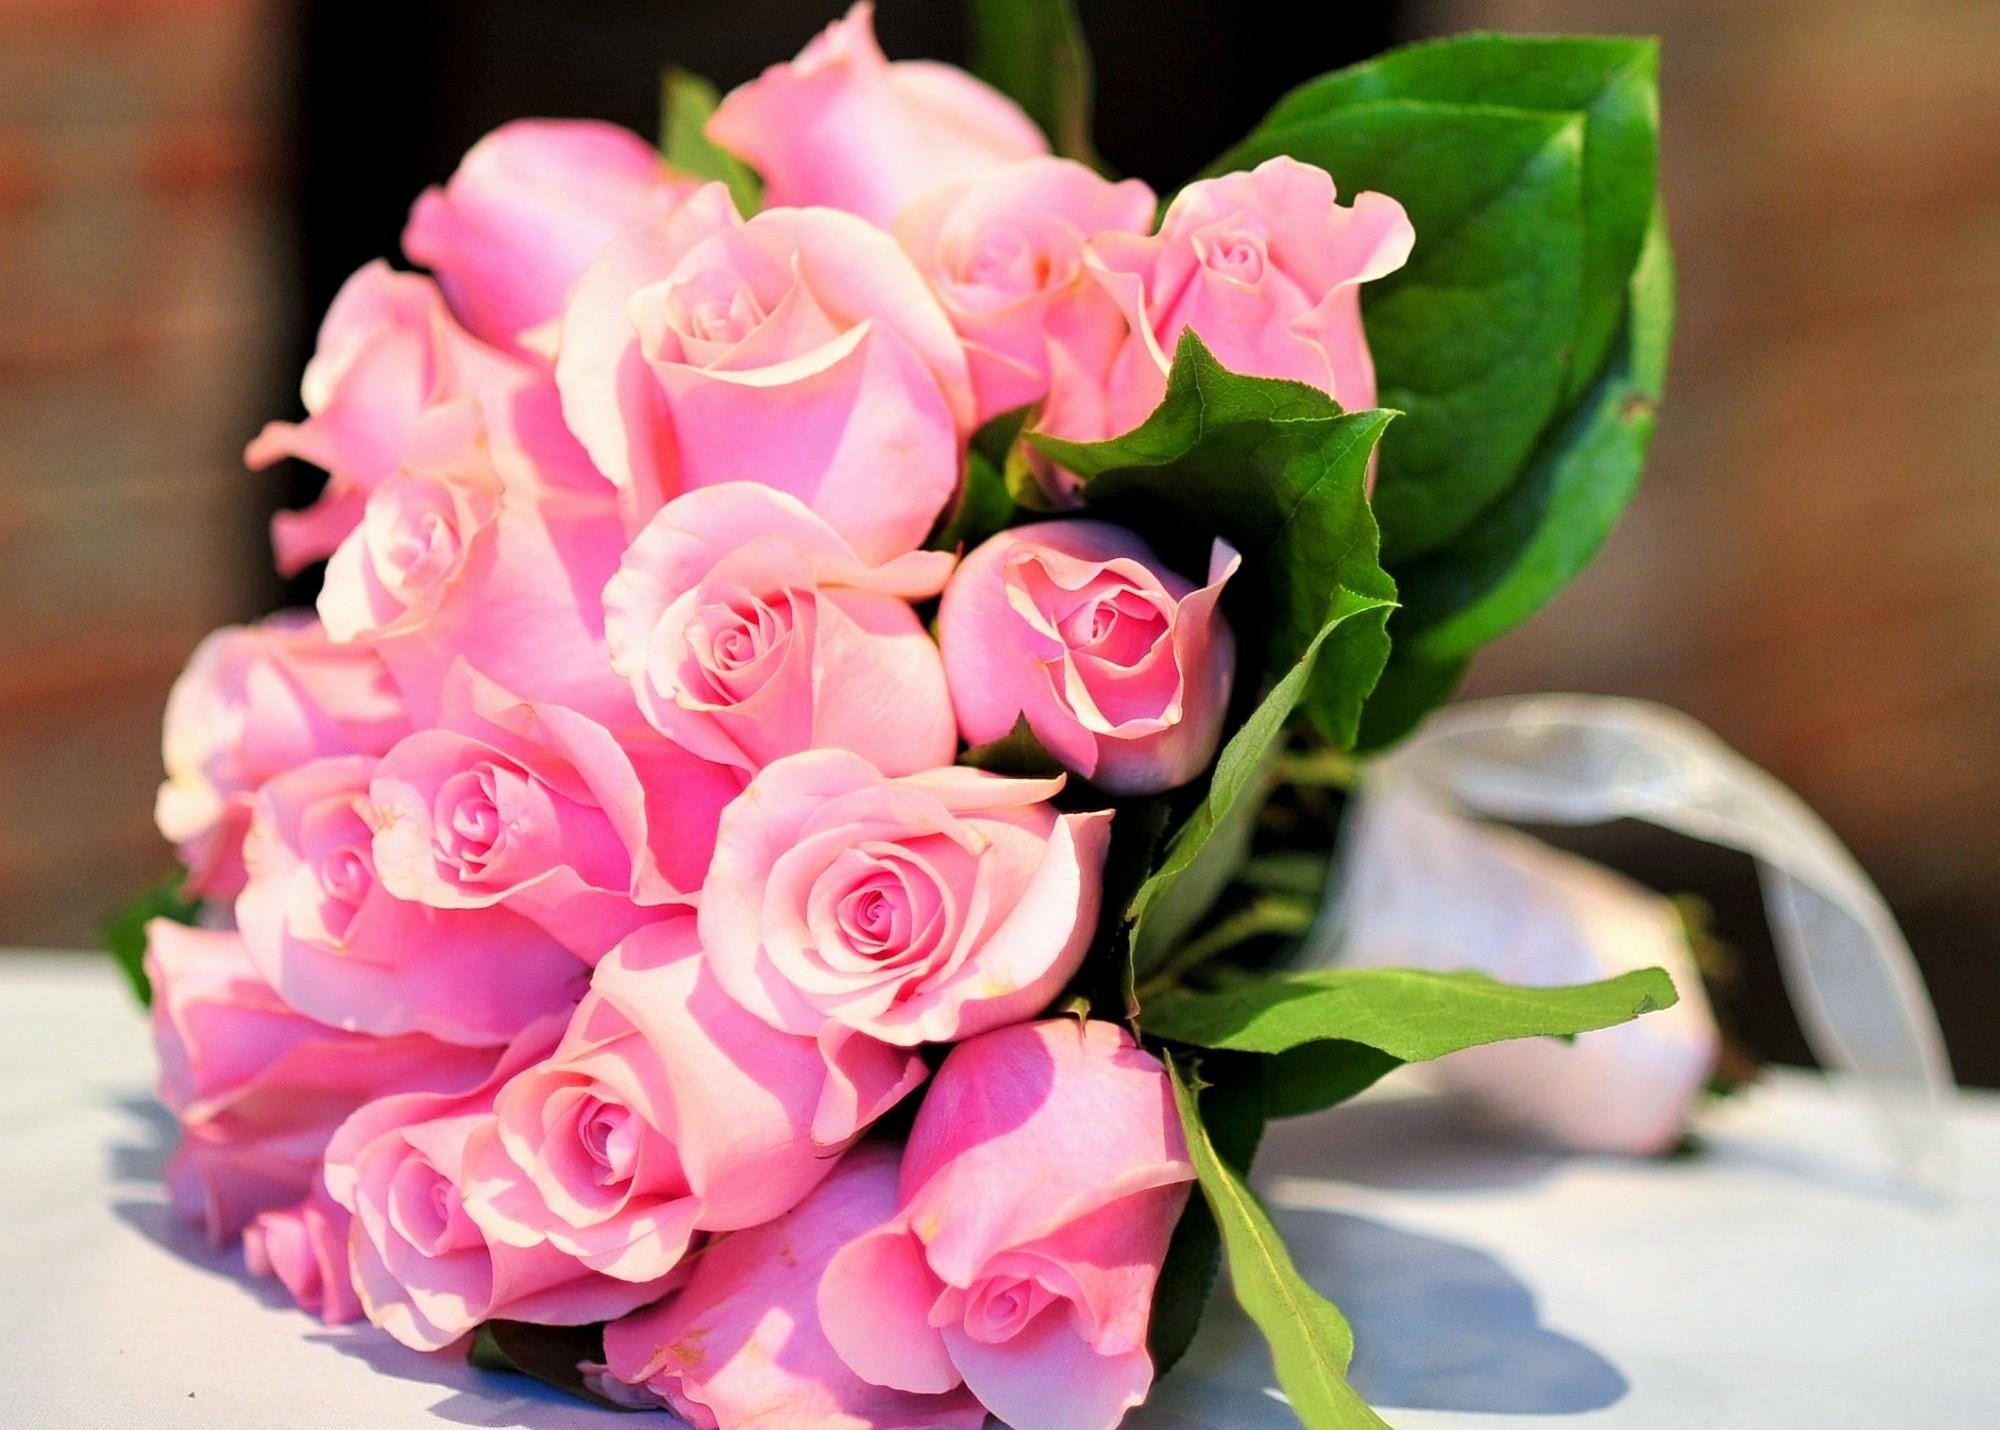 免费照片桌上放着一束粉红色的玫瑰花